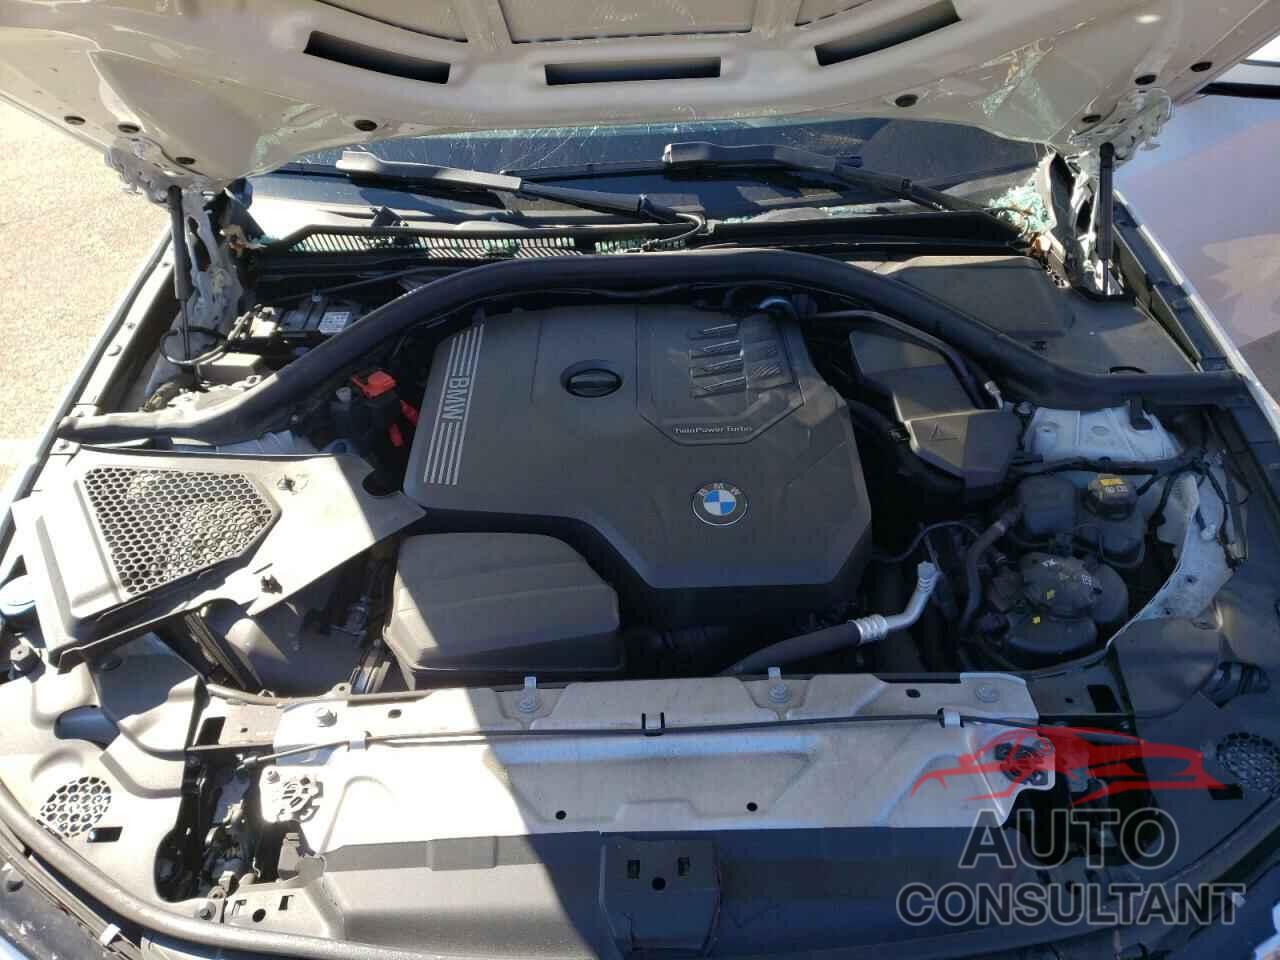 BMW 3 SERIES 2020 - 3MW5R7J00L8B30242